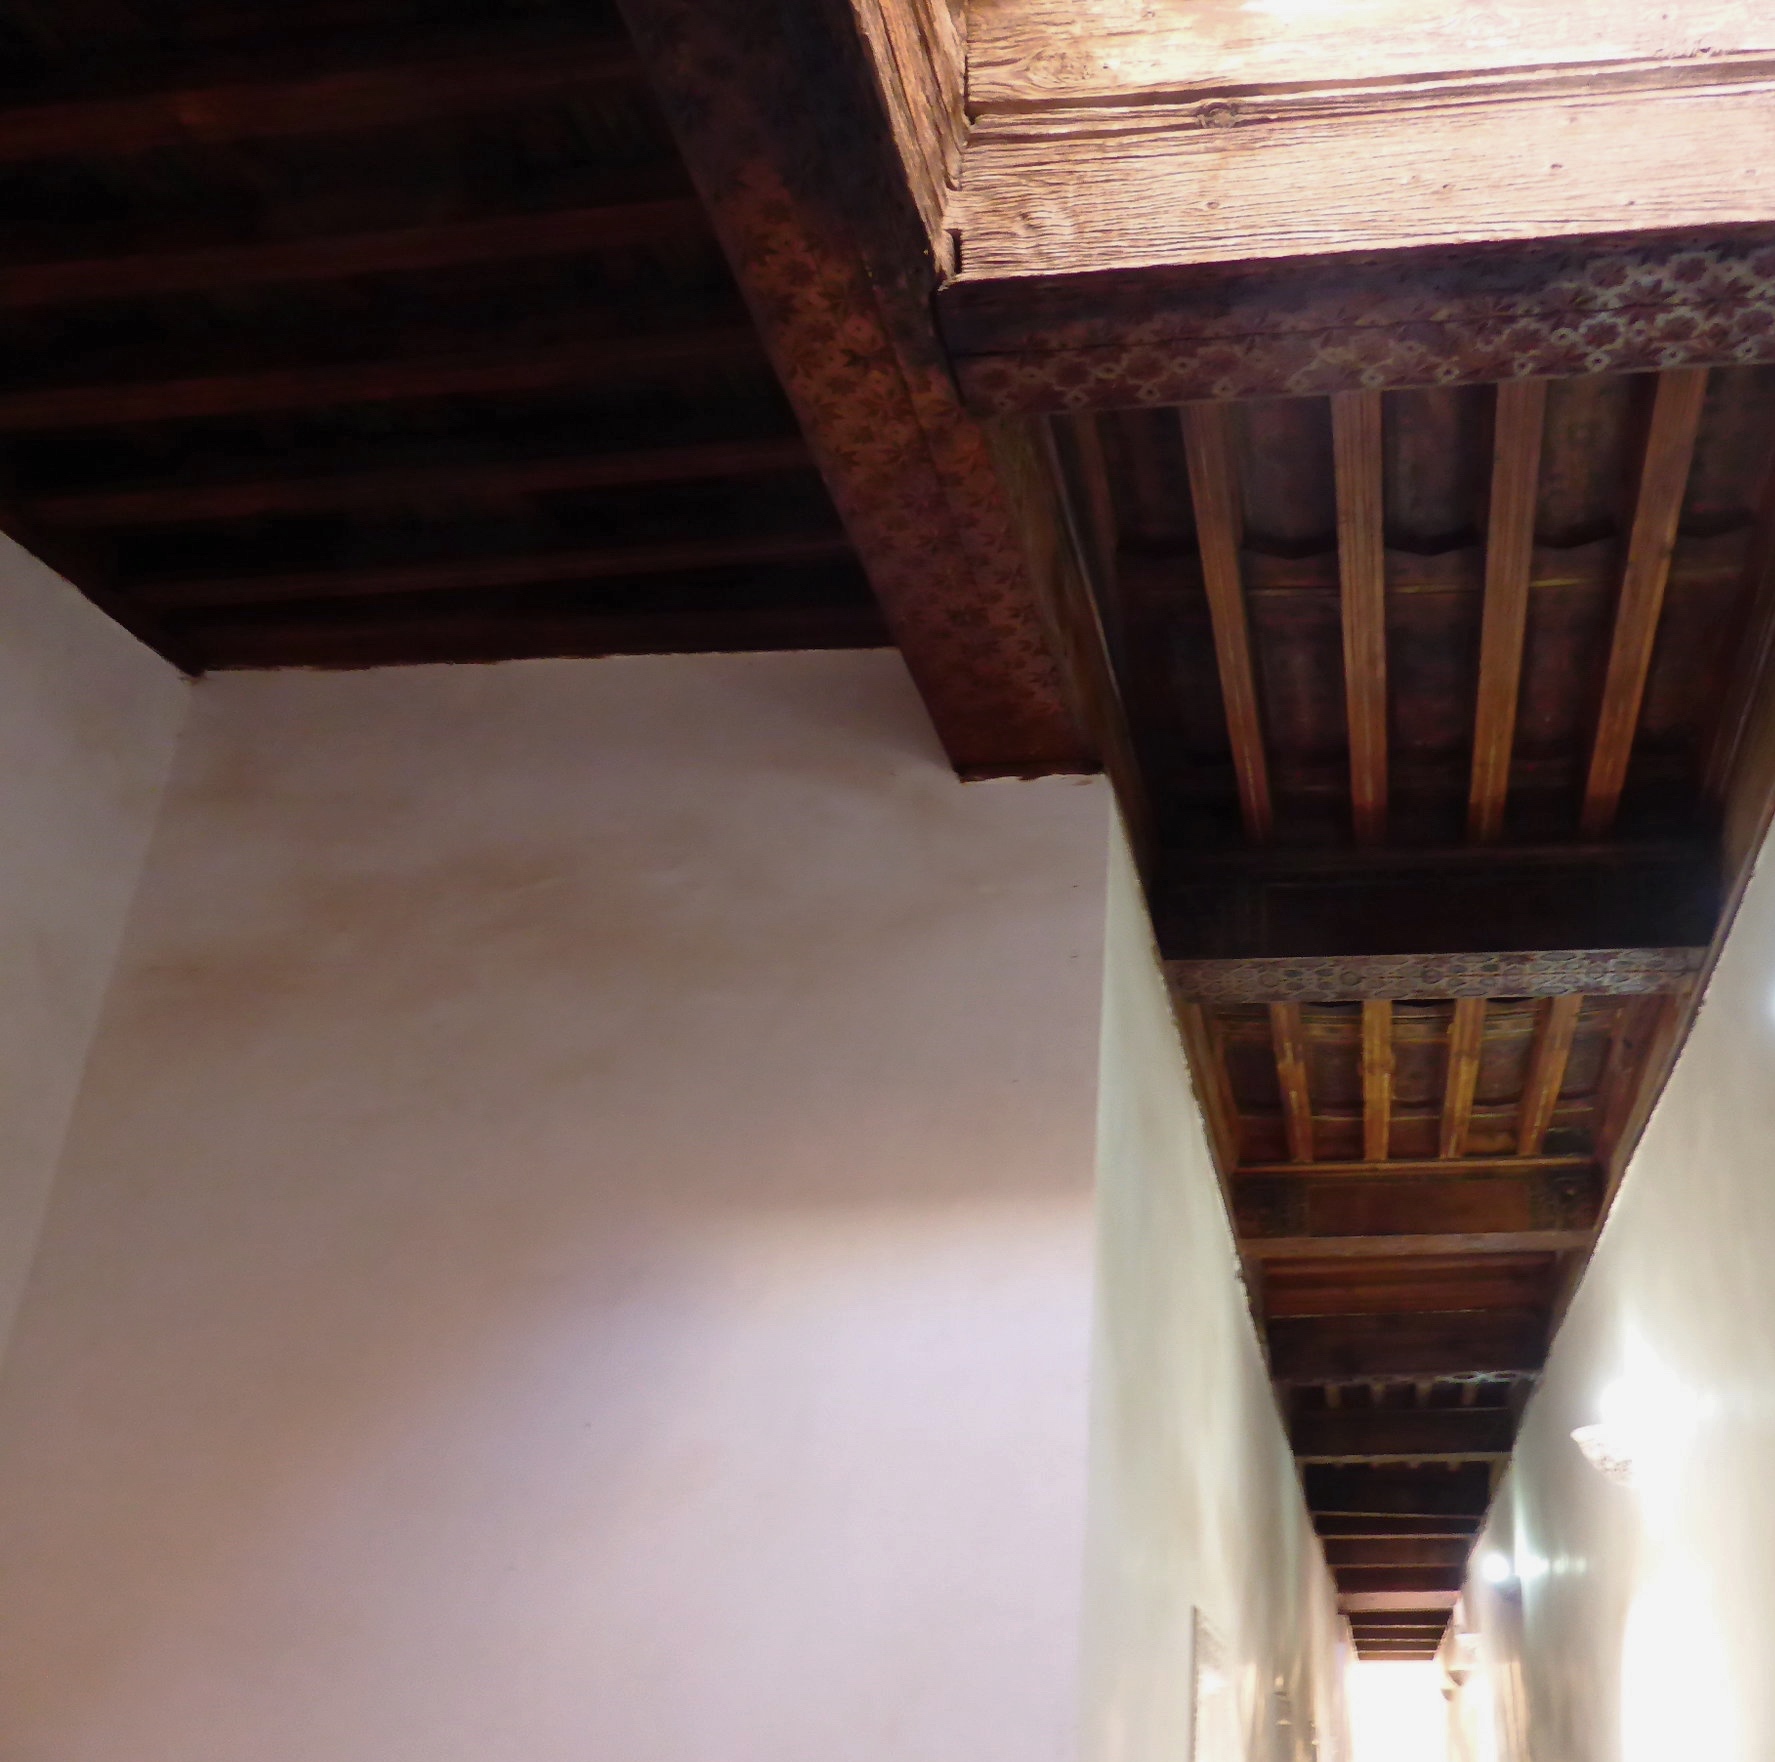  Artesonado ceiling of a house in Marrakech  